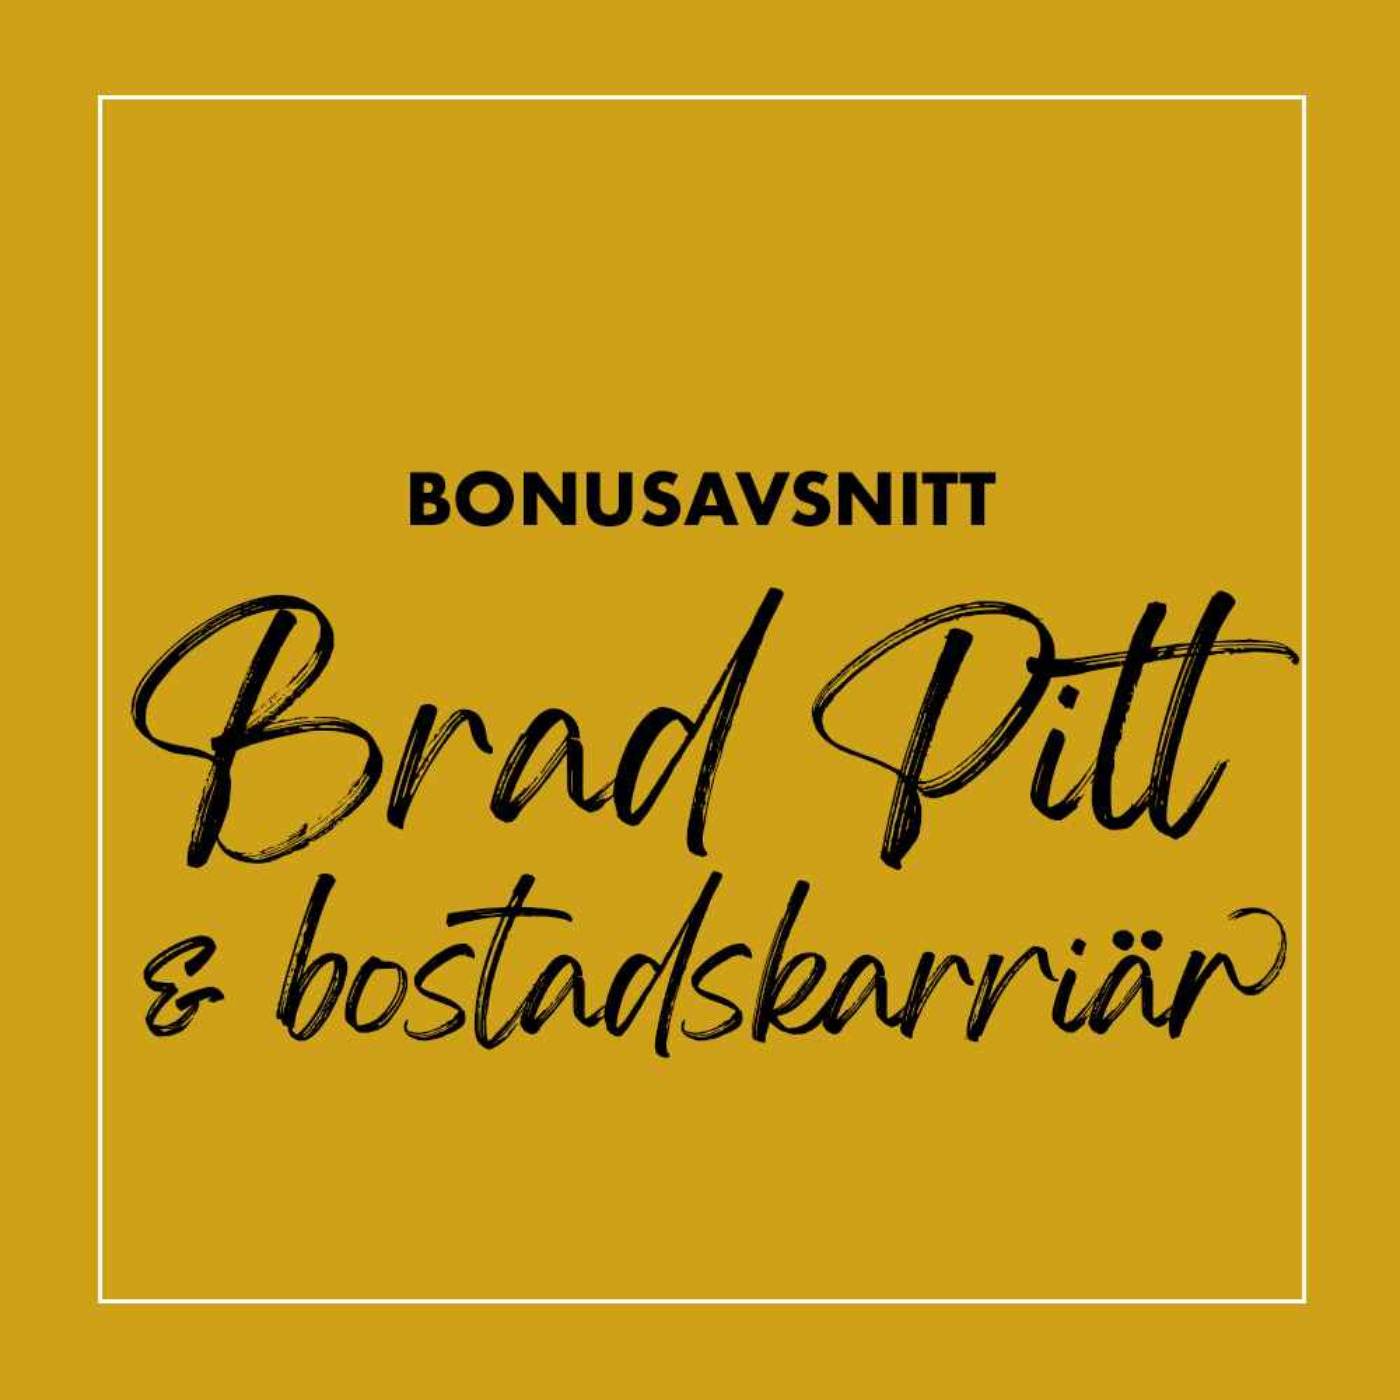 Bonus: Brad Pitt & bostadskarriär